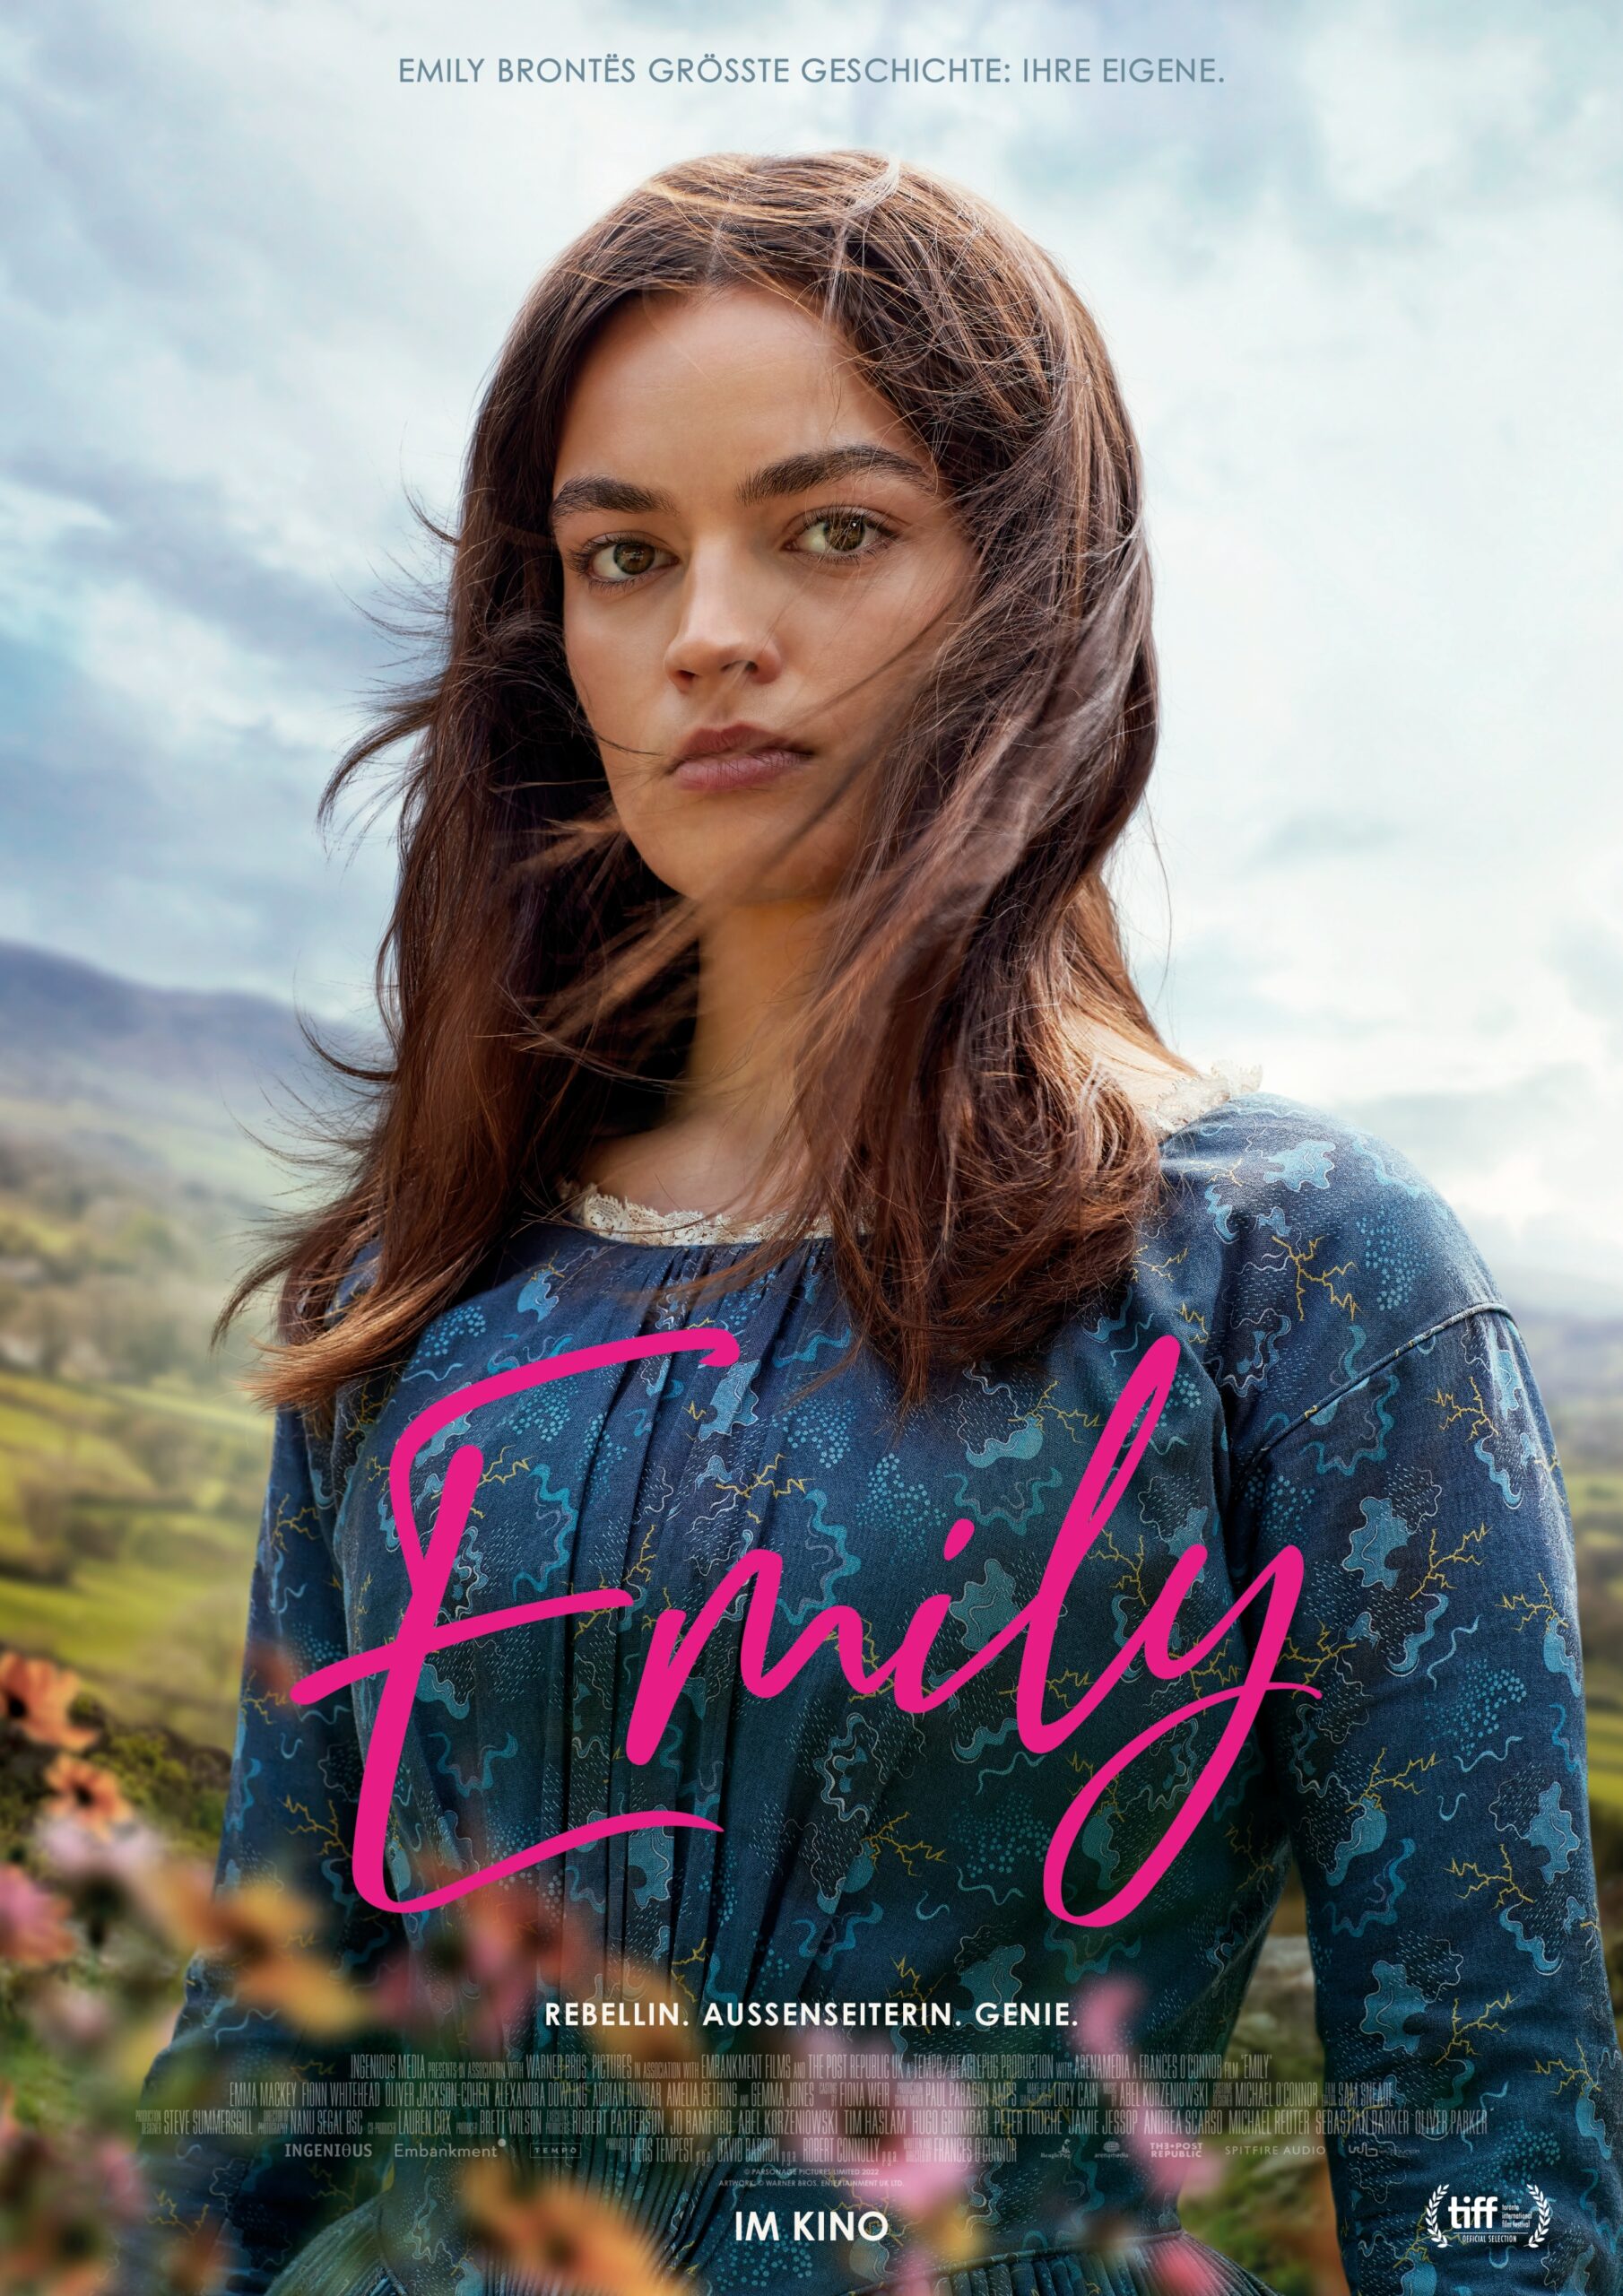 Filmplakat zu EMILY: Emma Mackey als Emily Brontë im Bruststück, vor einer Hügellandschaft mit wolkigem Himmel, über ihrem blauen Kleid eine Handschrift in Magenta "Emily"